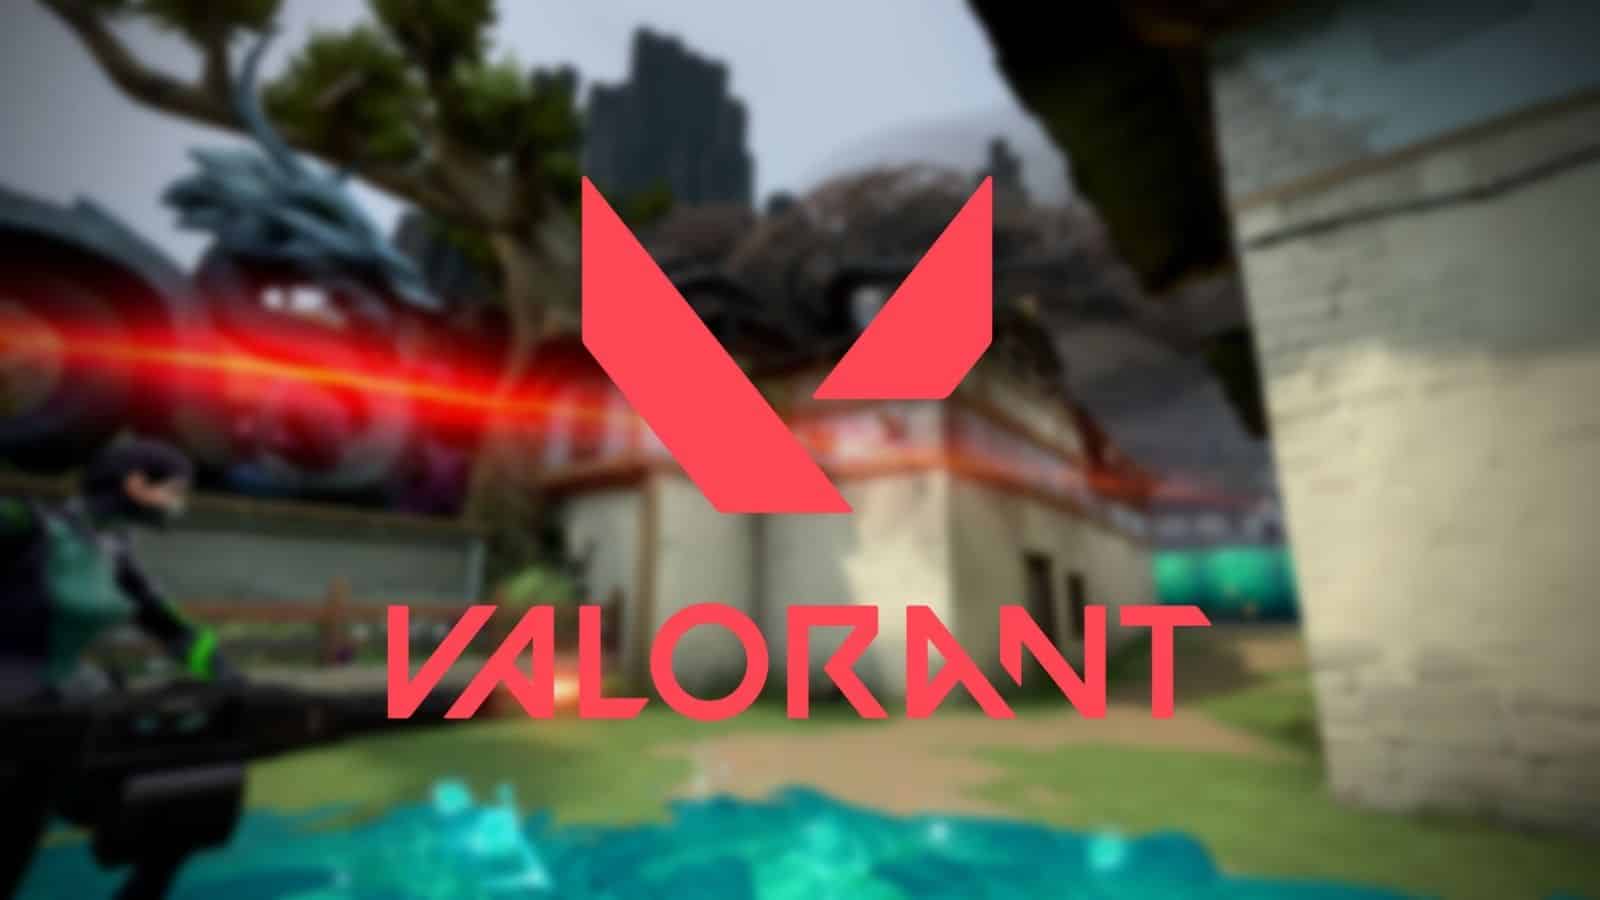 How I verify my tracker valorant account? - Valorant - Tracker Network